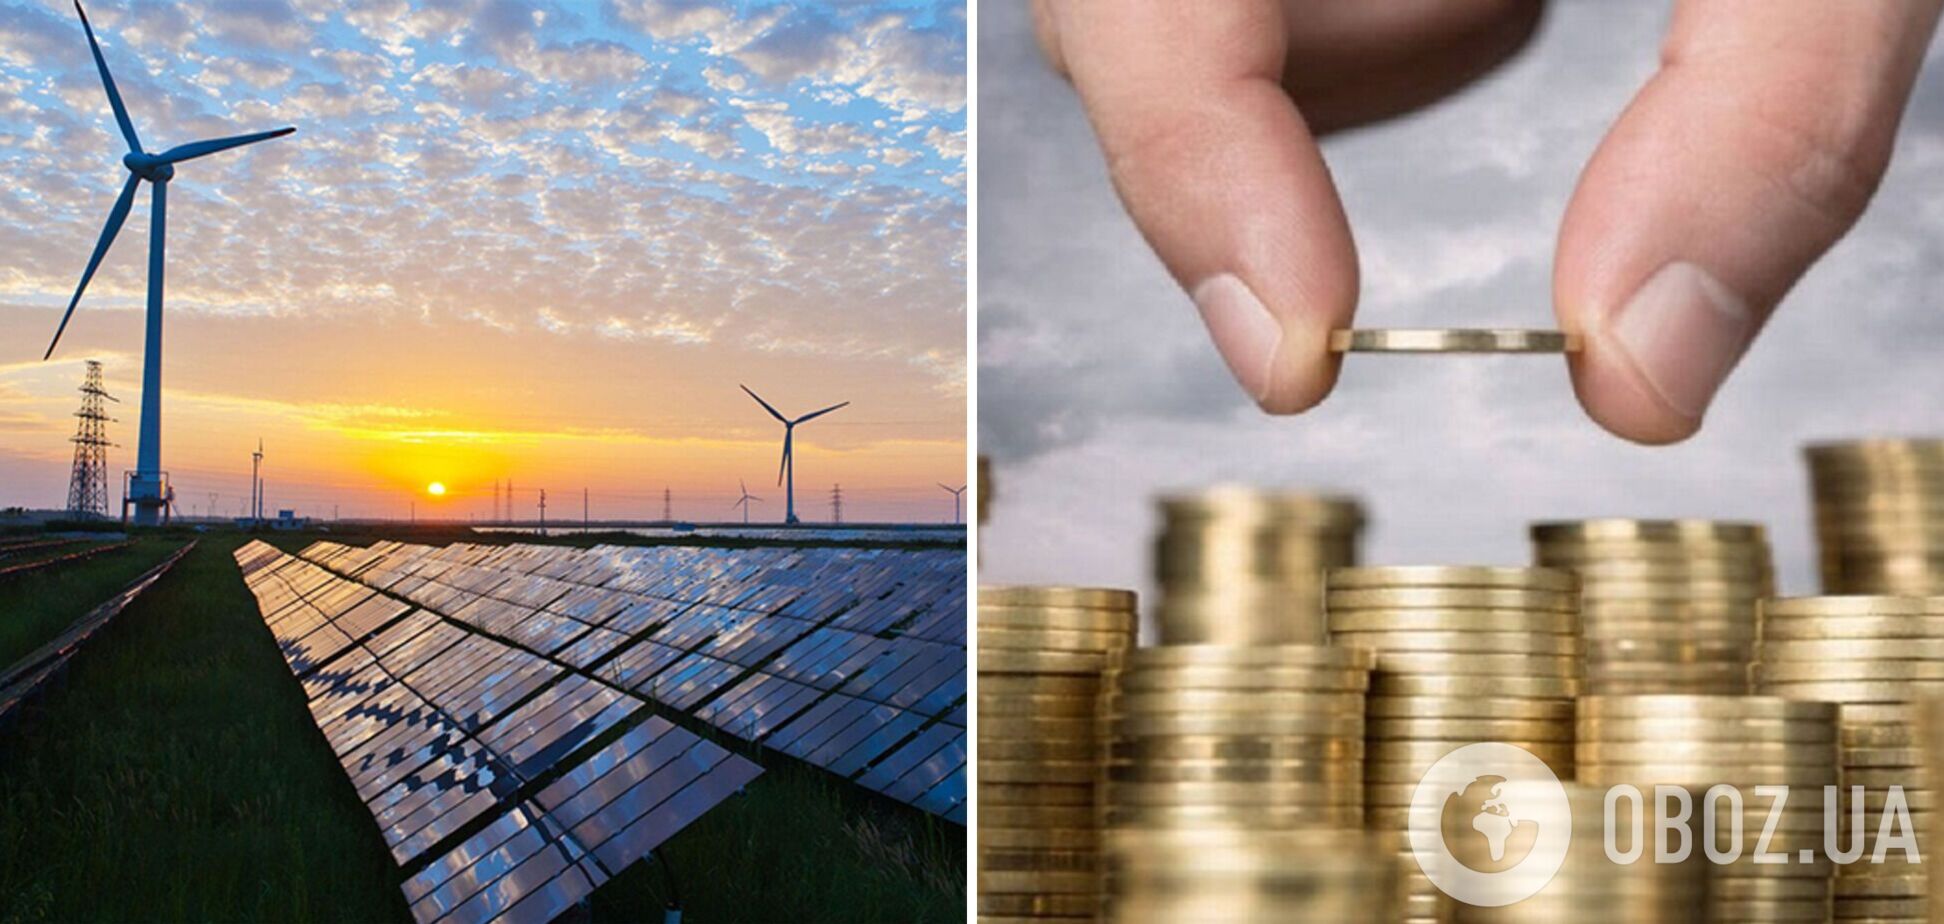 Депутати закликали Енергоспівтовариство не допустити поглиблення боргової кризи в зеленій енергетиці